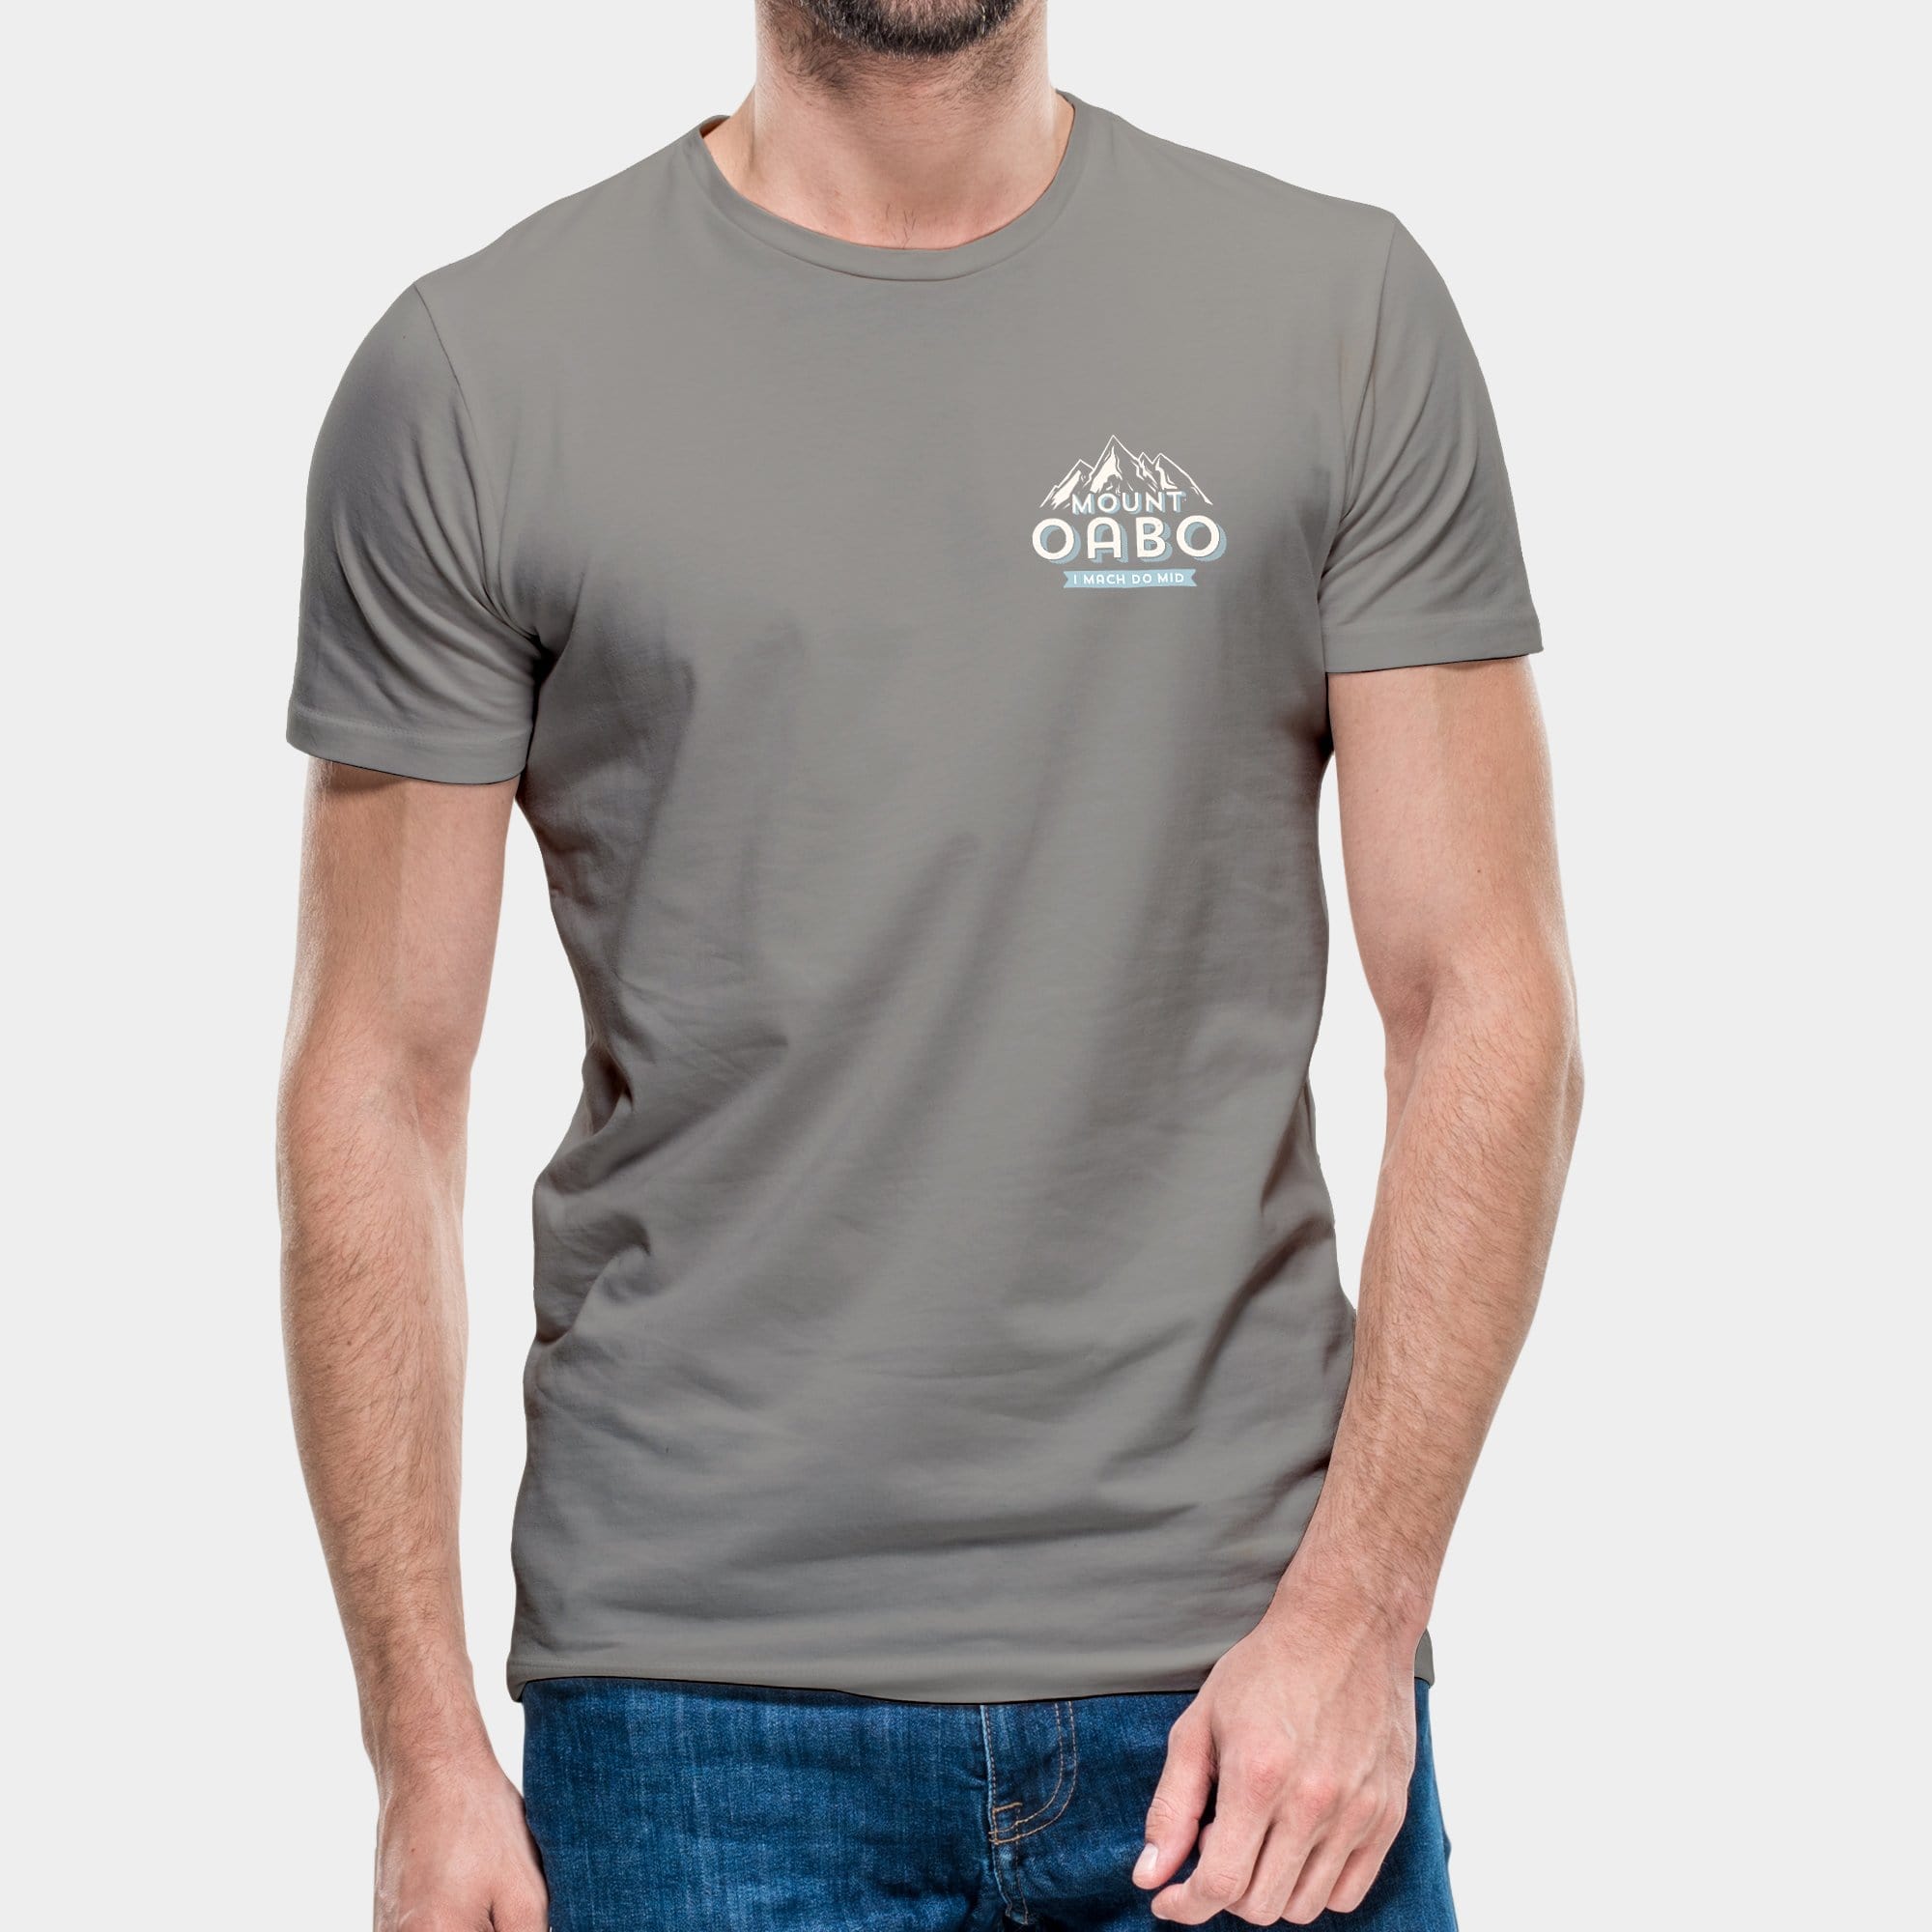 Projekt Herren-T-Shirt "Mount Oabo" S / opal - aus nachhaltiger und fairer Produktion